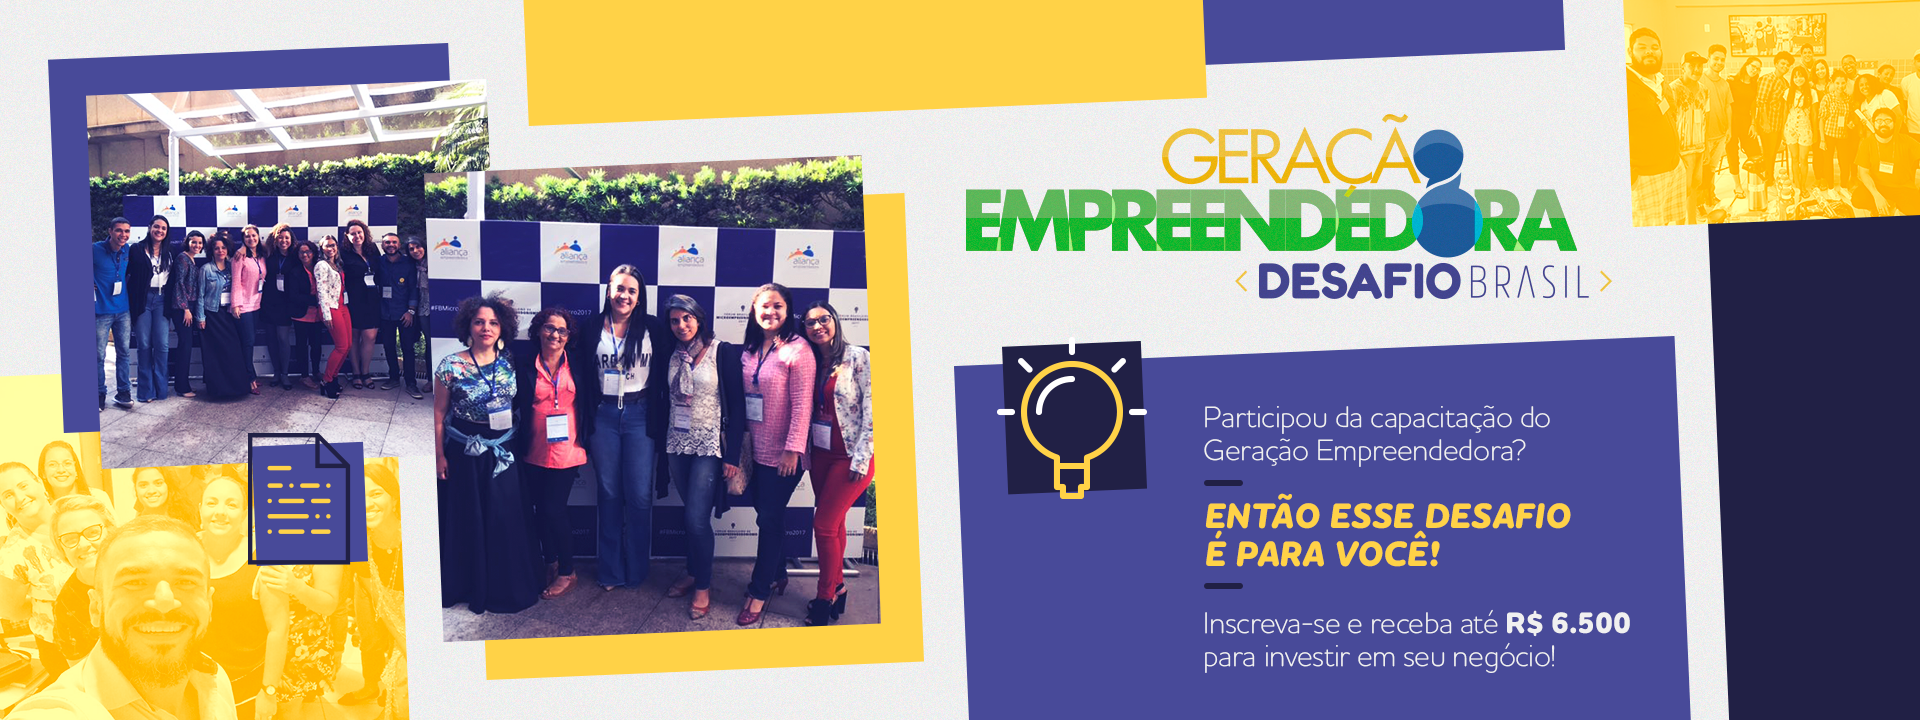 Geração Empreendedora – Desafio Brasil: concurso vai apoiar jovens empreendedores que passaram por capacitações das organizações aliadas do programa